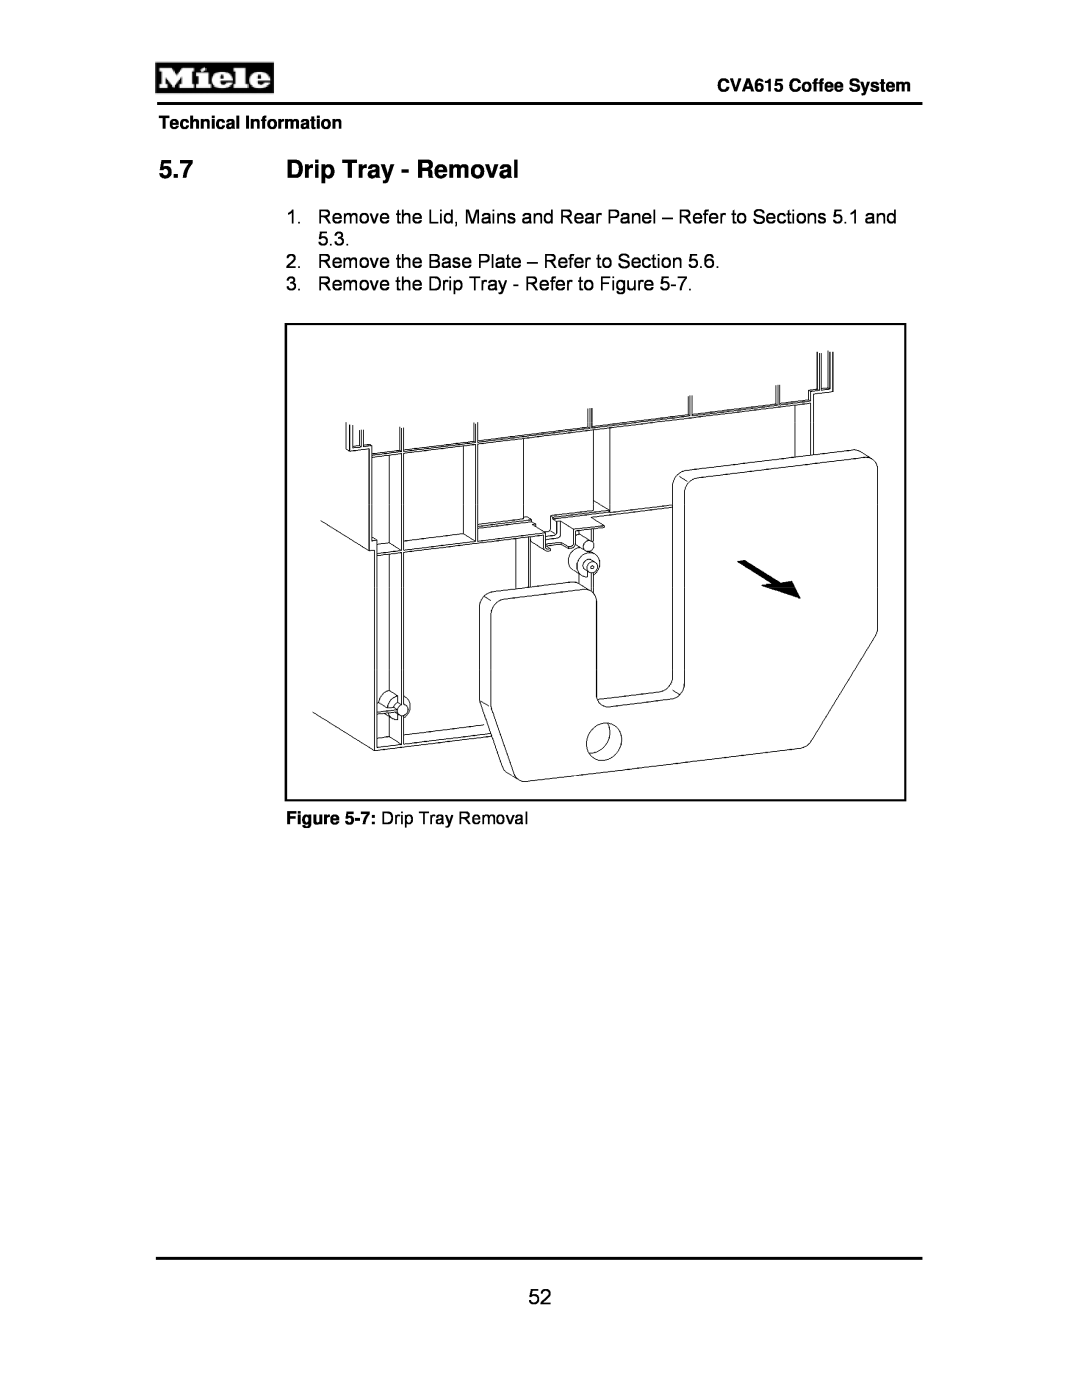 Miele CVA615 5.7Drip Tray - Removal, Remove the Base Plate – Refer to Section, Remove the Drip Tray - Refer to Figure 